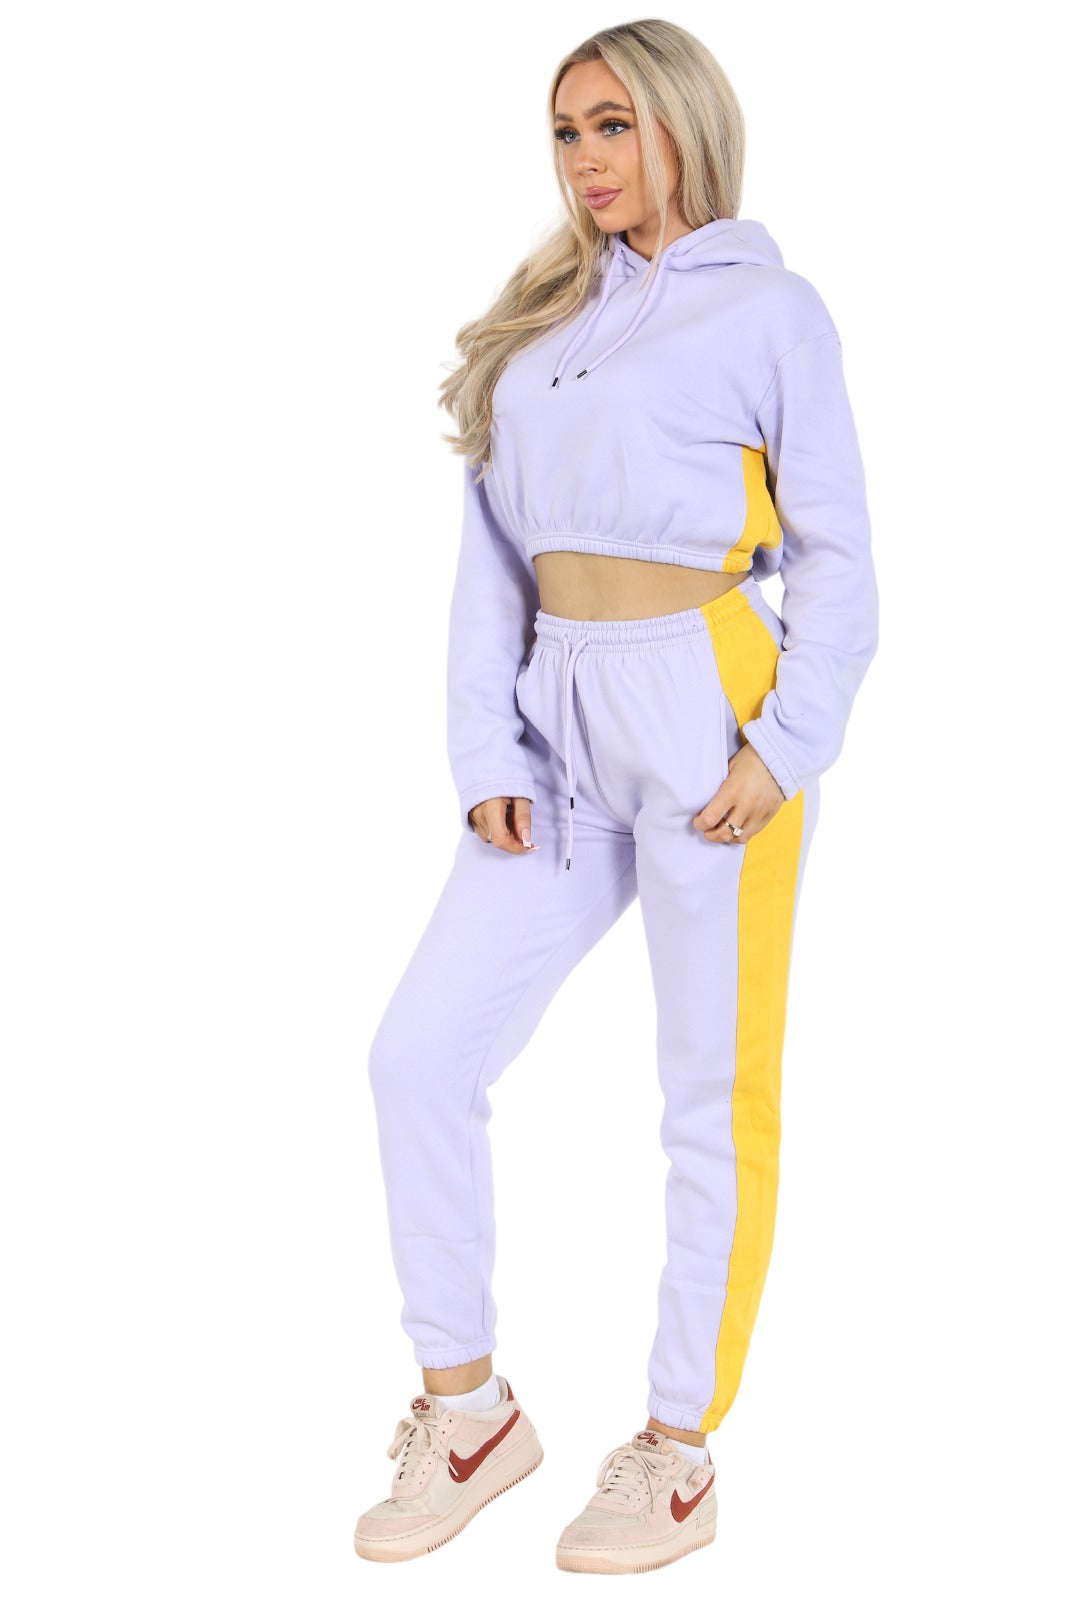 Bahob® Women's Sportswear Set, 2 Piece Women Track Suit Set Hoodie